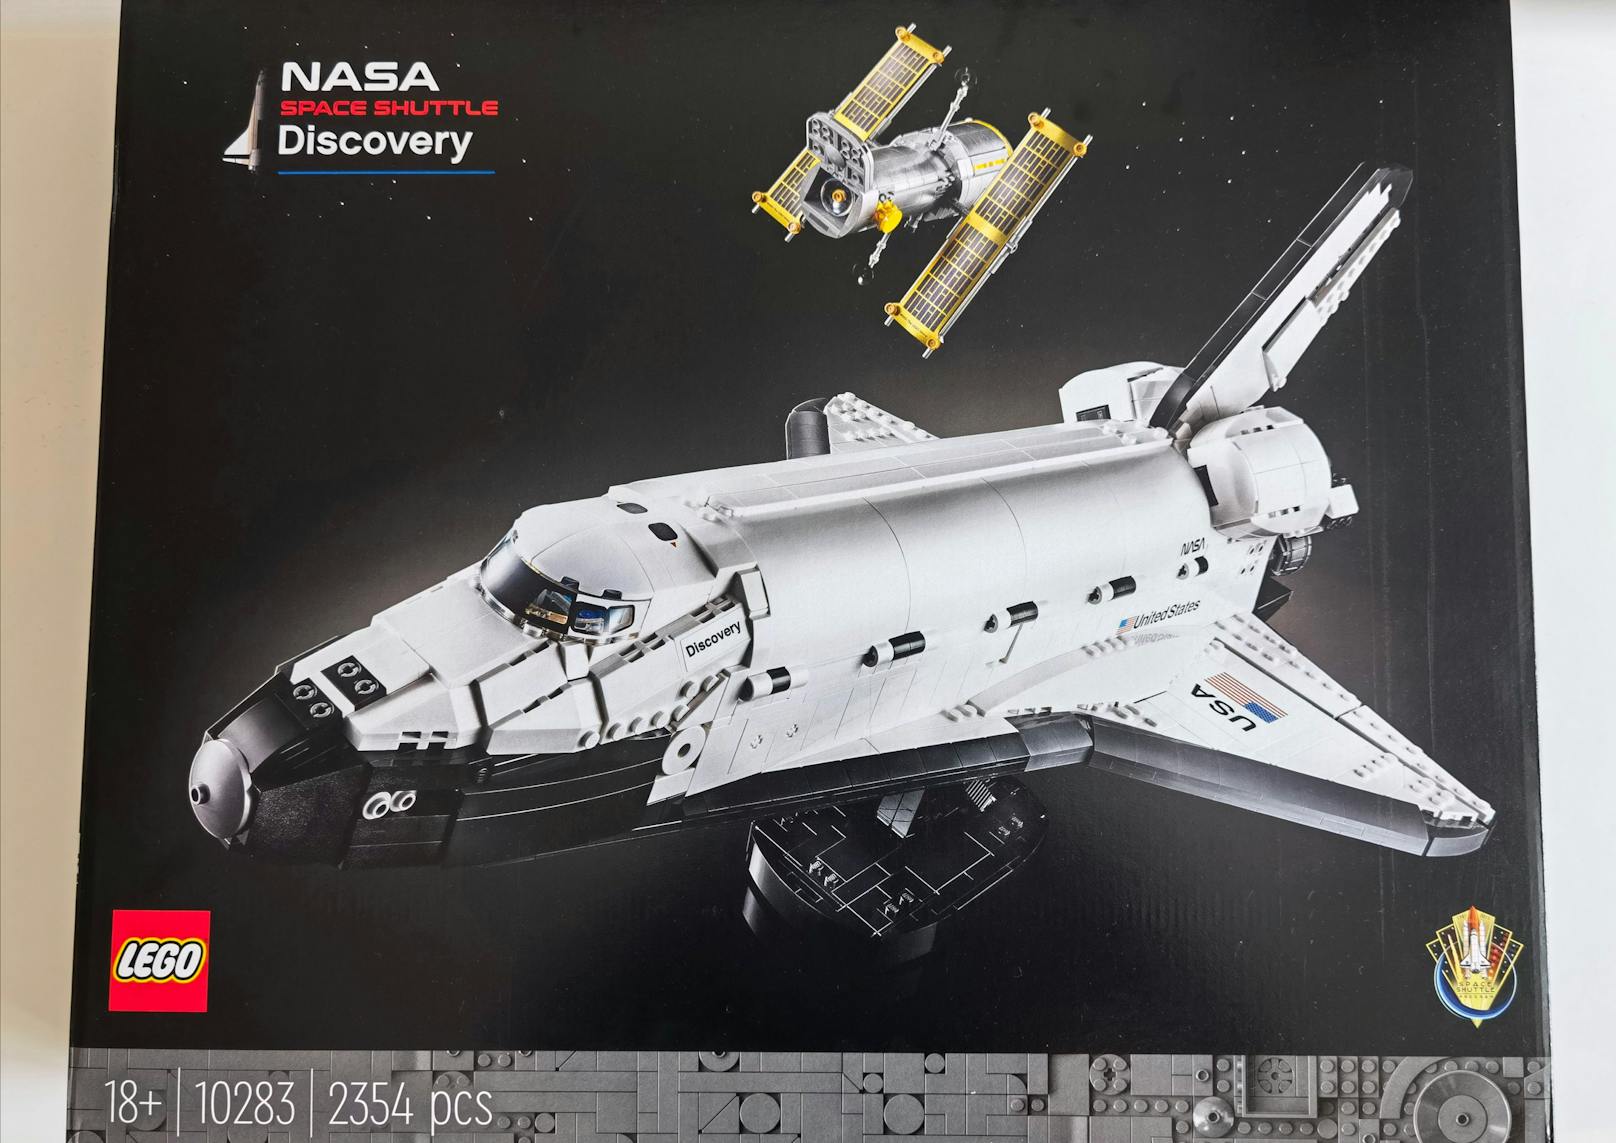 LEGO macht dies mit dem beeindruckend großen Modell LEGO NASA Discovery Space Shuttle, das sich an erfahrene LEGO-Bauer ab einem Alter von 18 Jahren richtet.